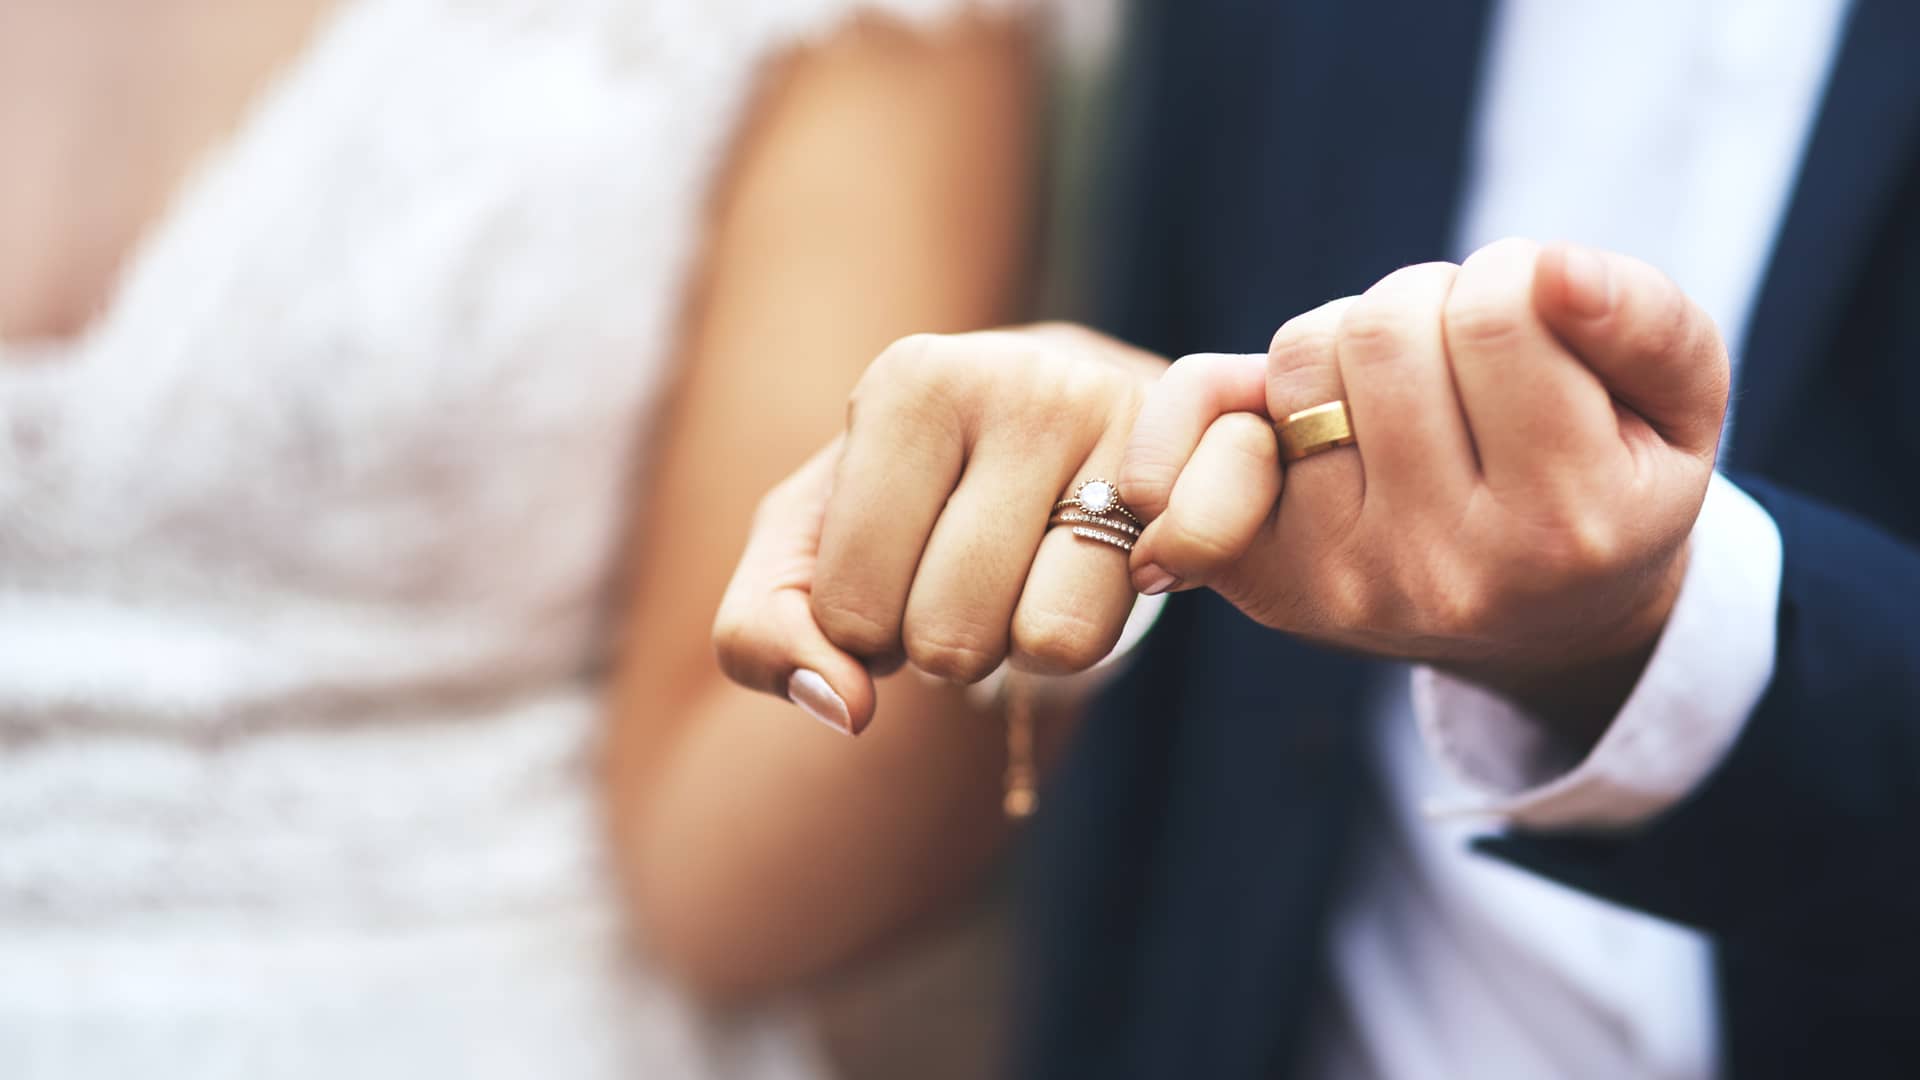 Pareja de recien casados muestran sus manos entrelazadas con sus nuevas alianzas, representando su nueva vida en pareja y su hipoteca compartida